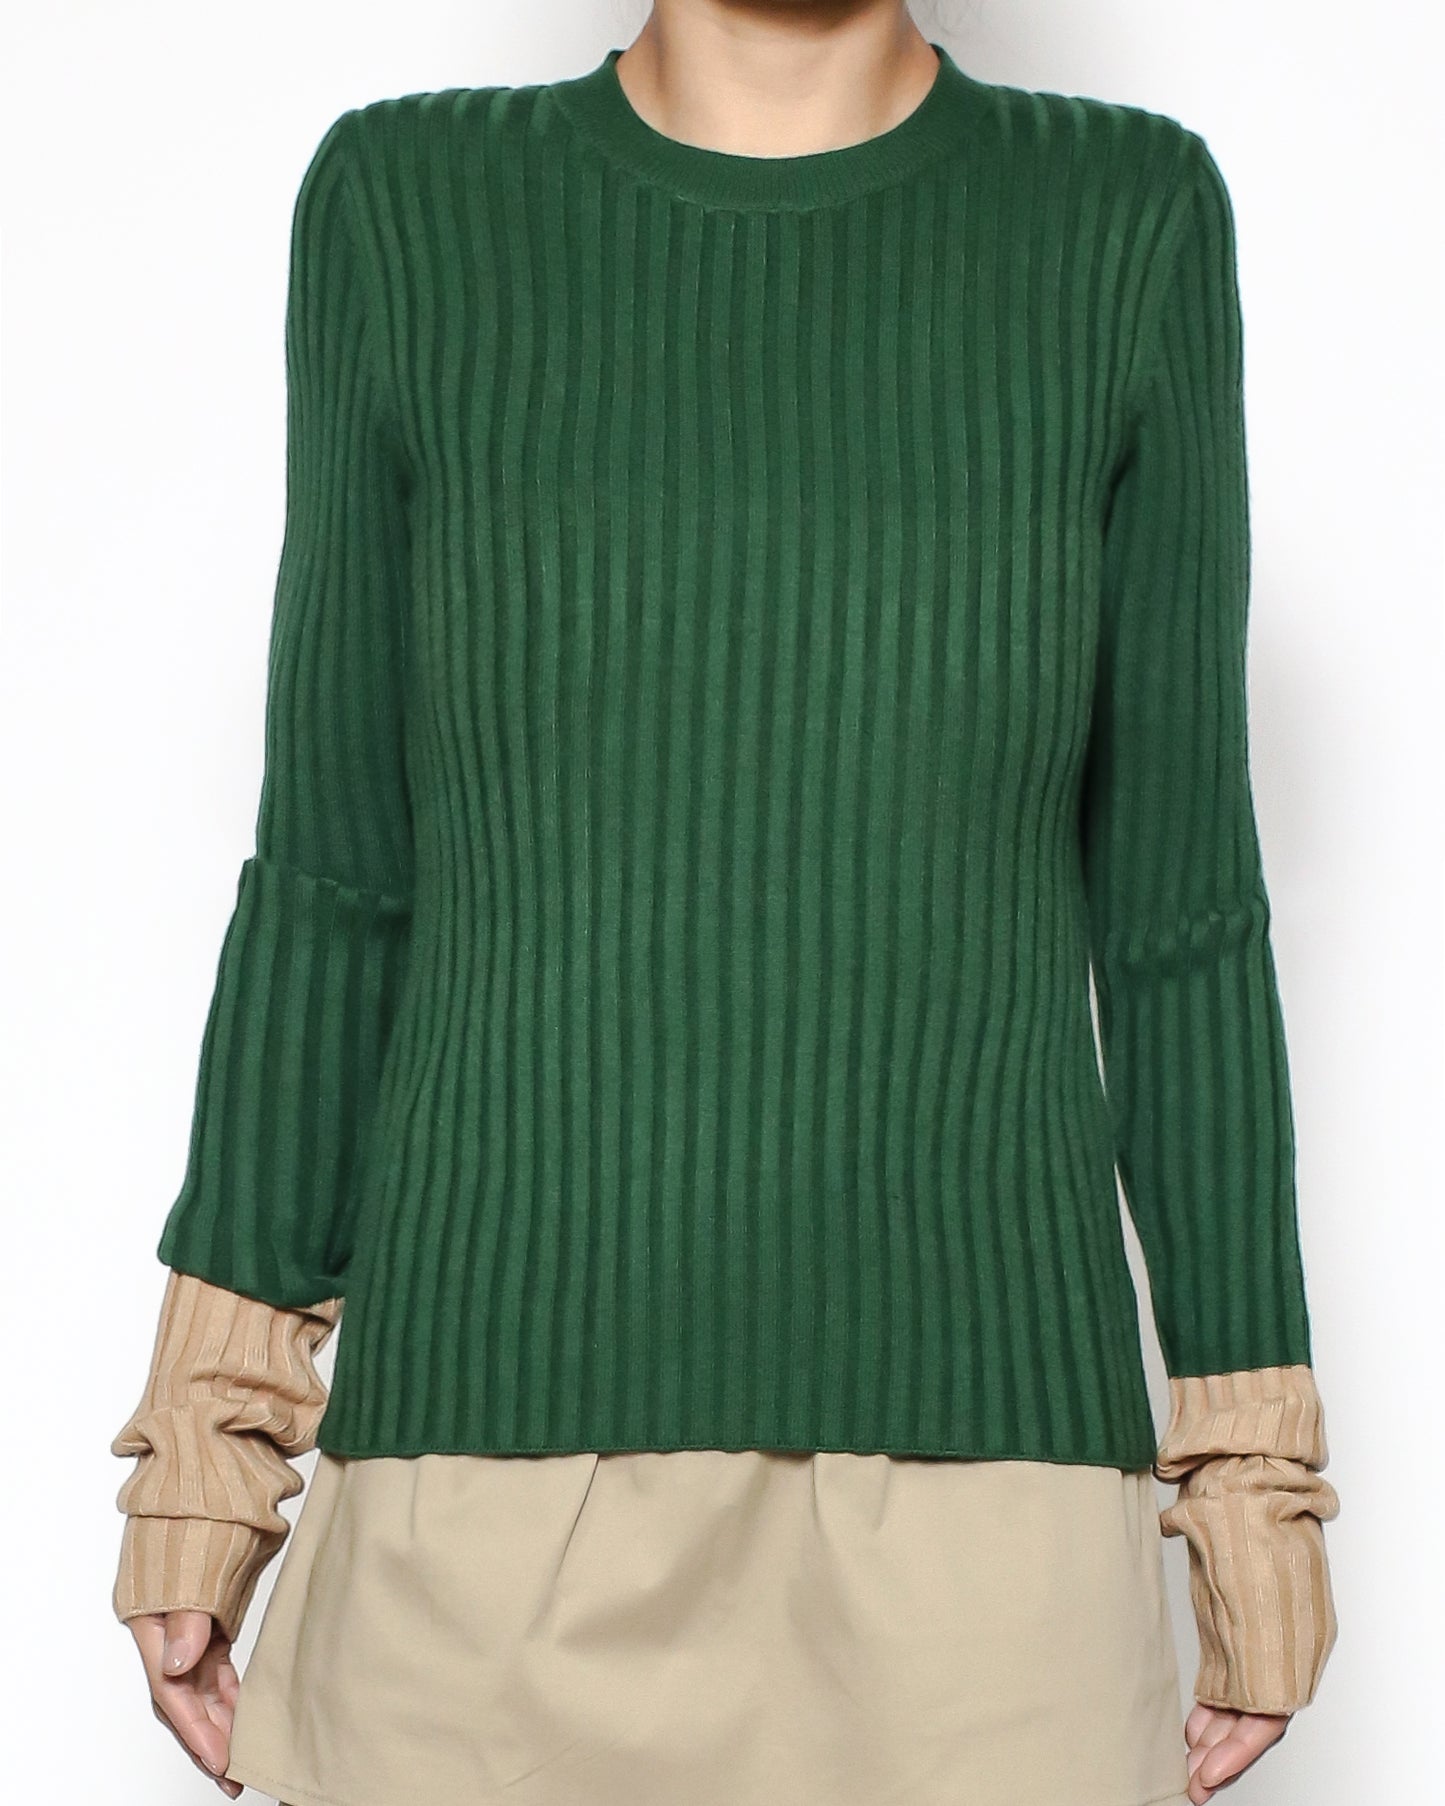 green & beige sleeves knitted top *pre-order*